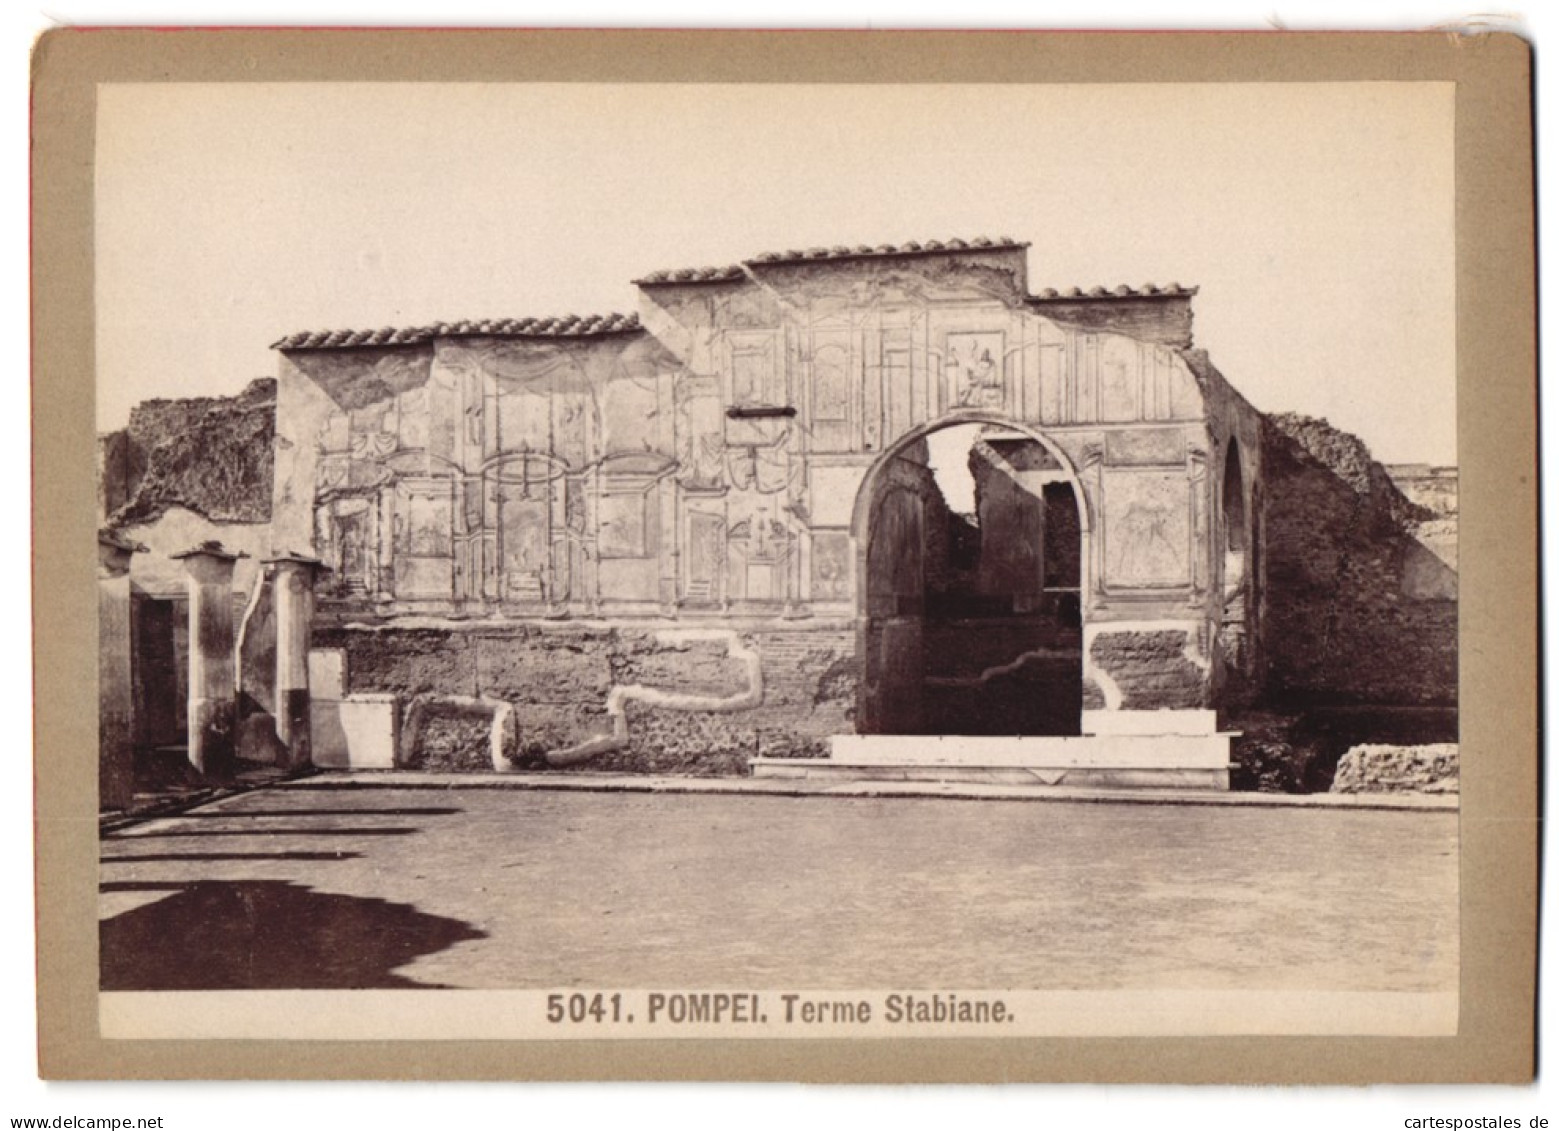 Foto Giacomo Brogi, Florence-Naples, Ansicht Pompei - Pompeji, Terme Stabiane  - Places